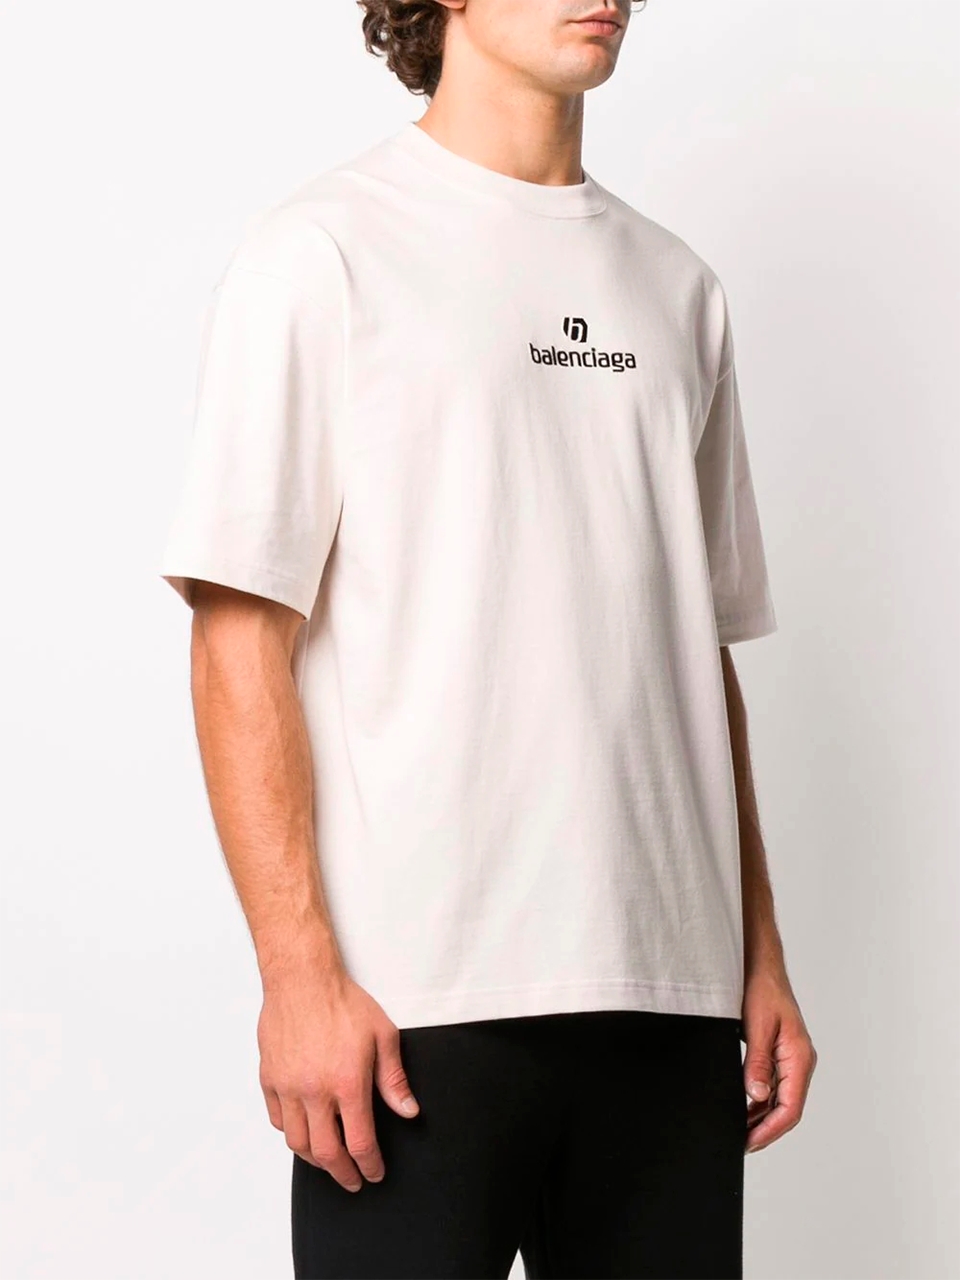 Imagem de: Camiseta Balenciaga Branca com Logo Sponsor